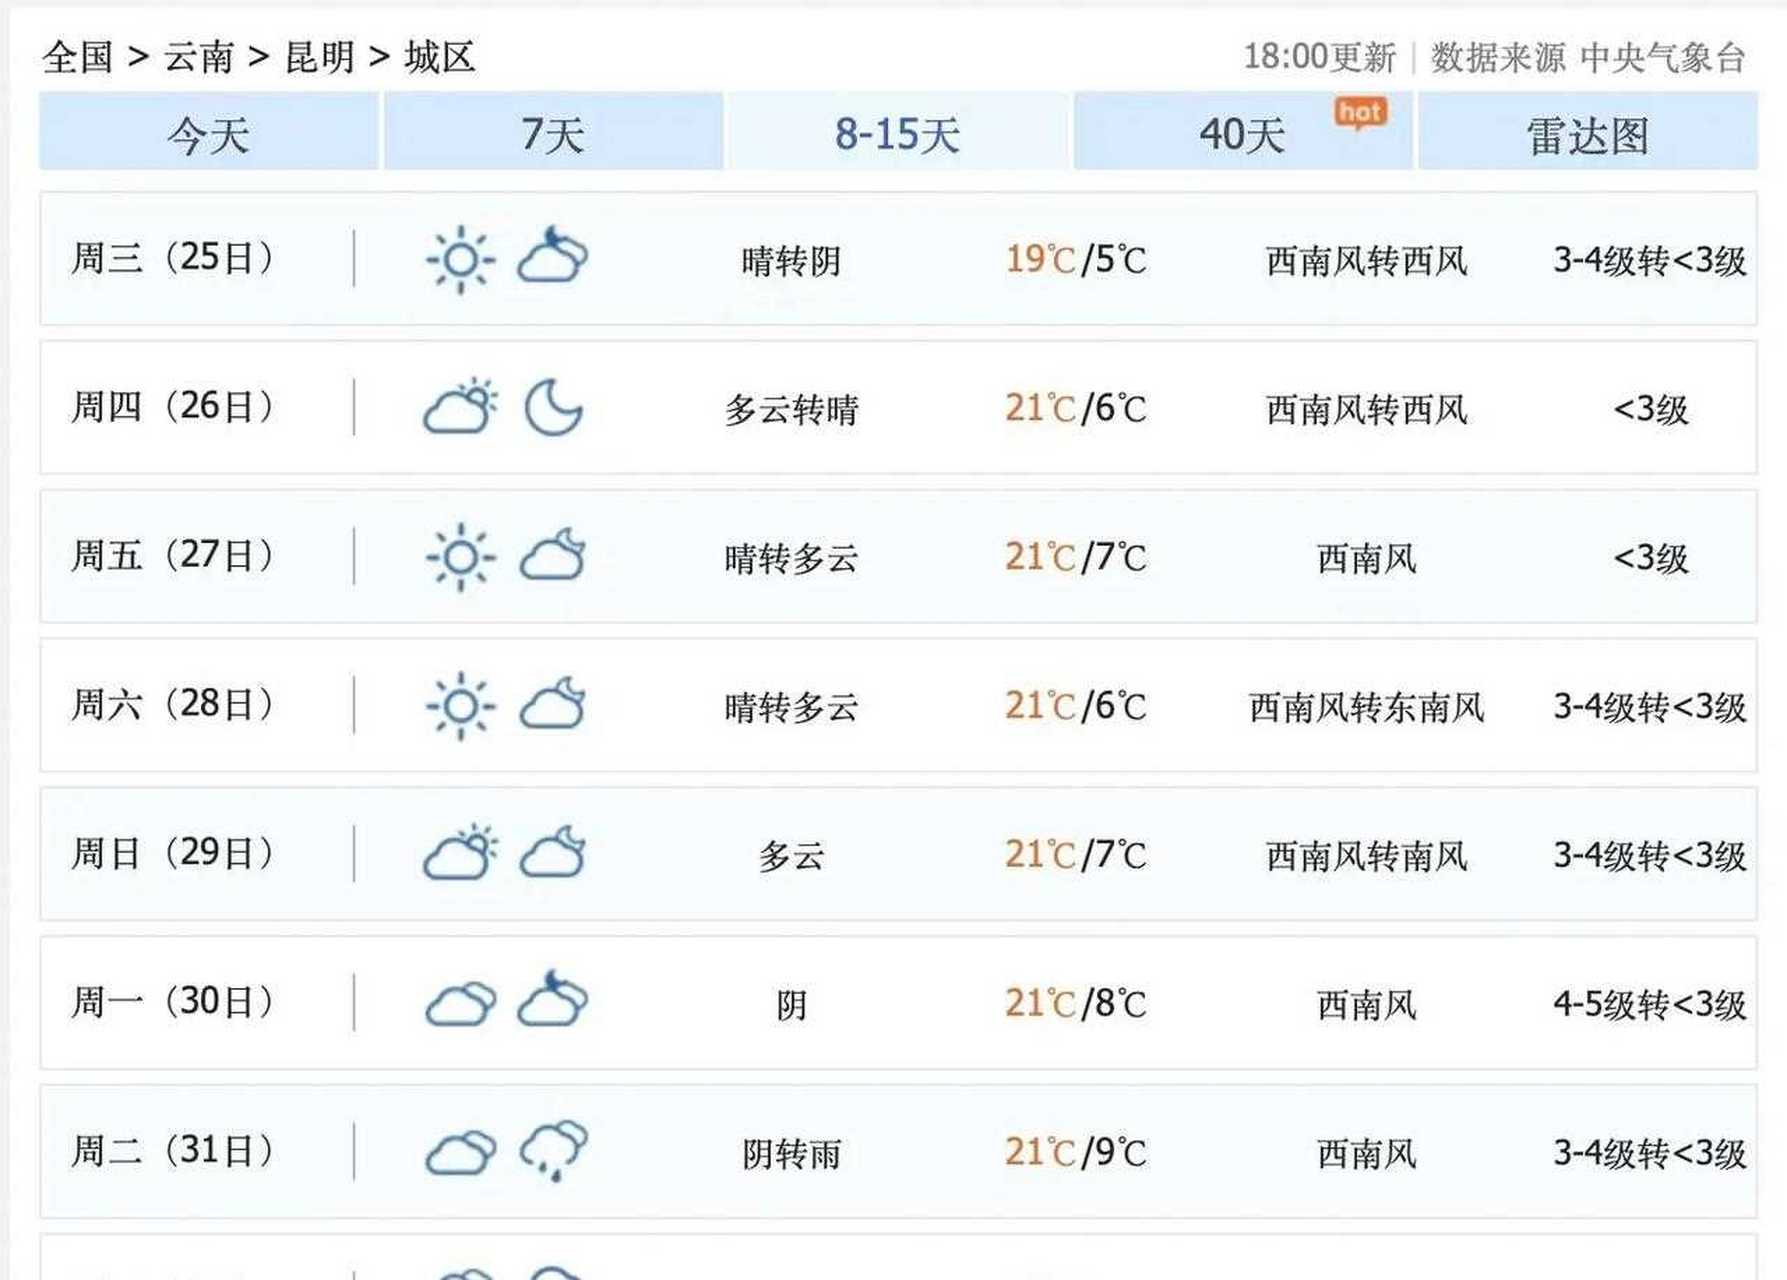 研究琢磨了一下云南省昆明市和大理市的天气预报,我们打算1月25日,大